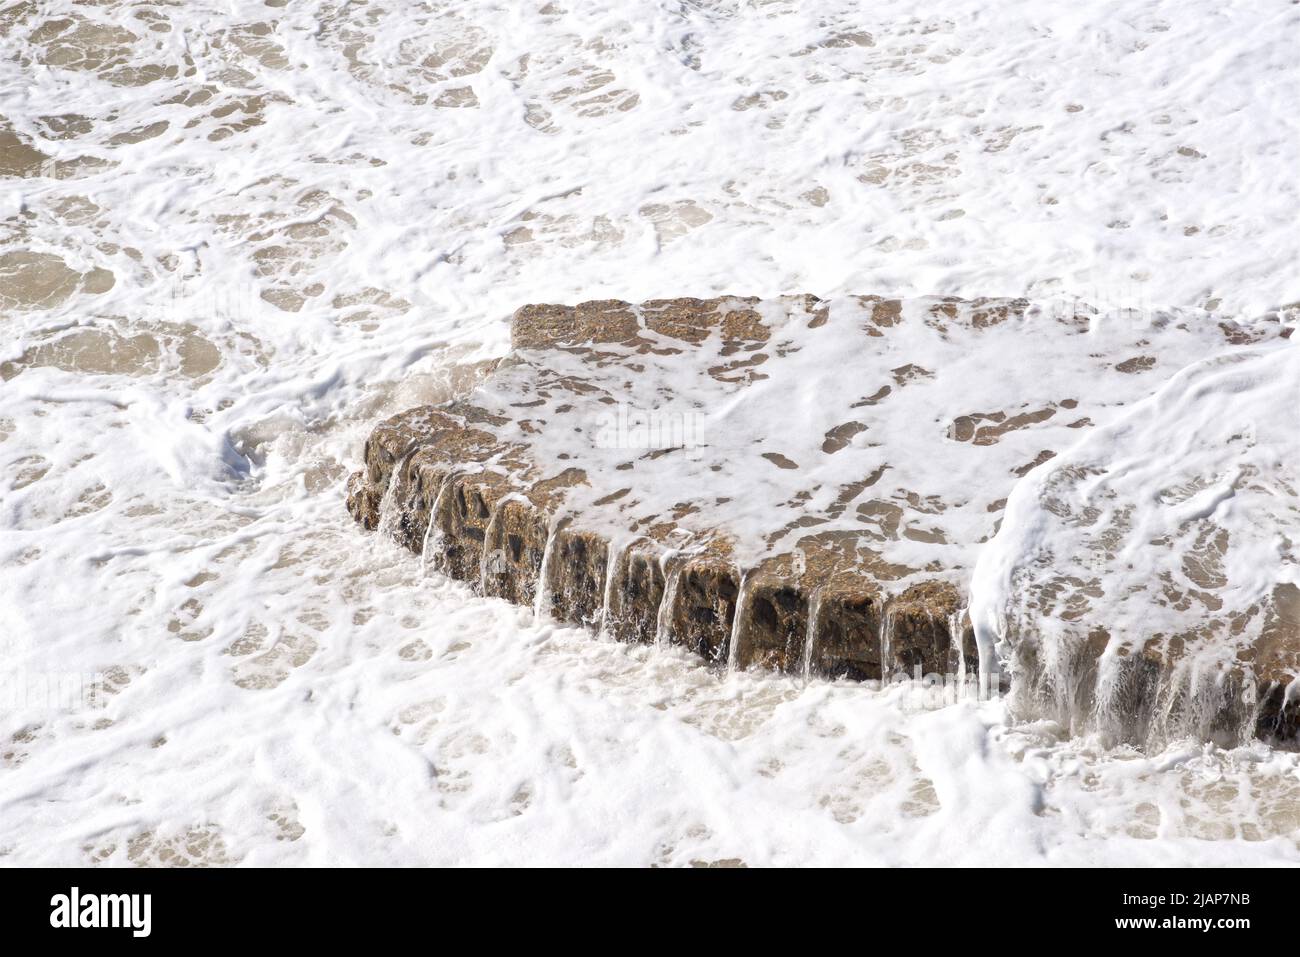 L'eau déborde de la base d'une gélyne de défense maritime sur la plage de Brighton, East Sussex, Angleterre, Royaume-Uni Banque D'Images